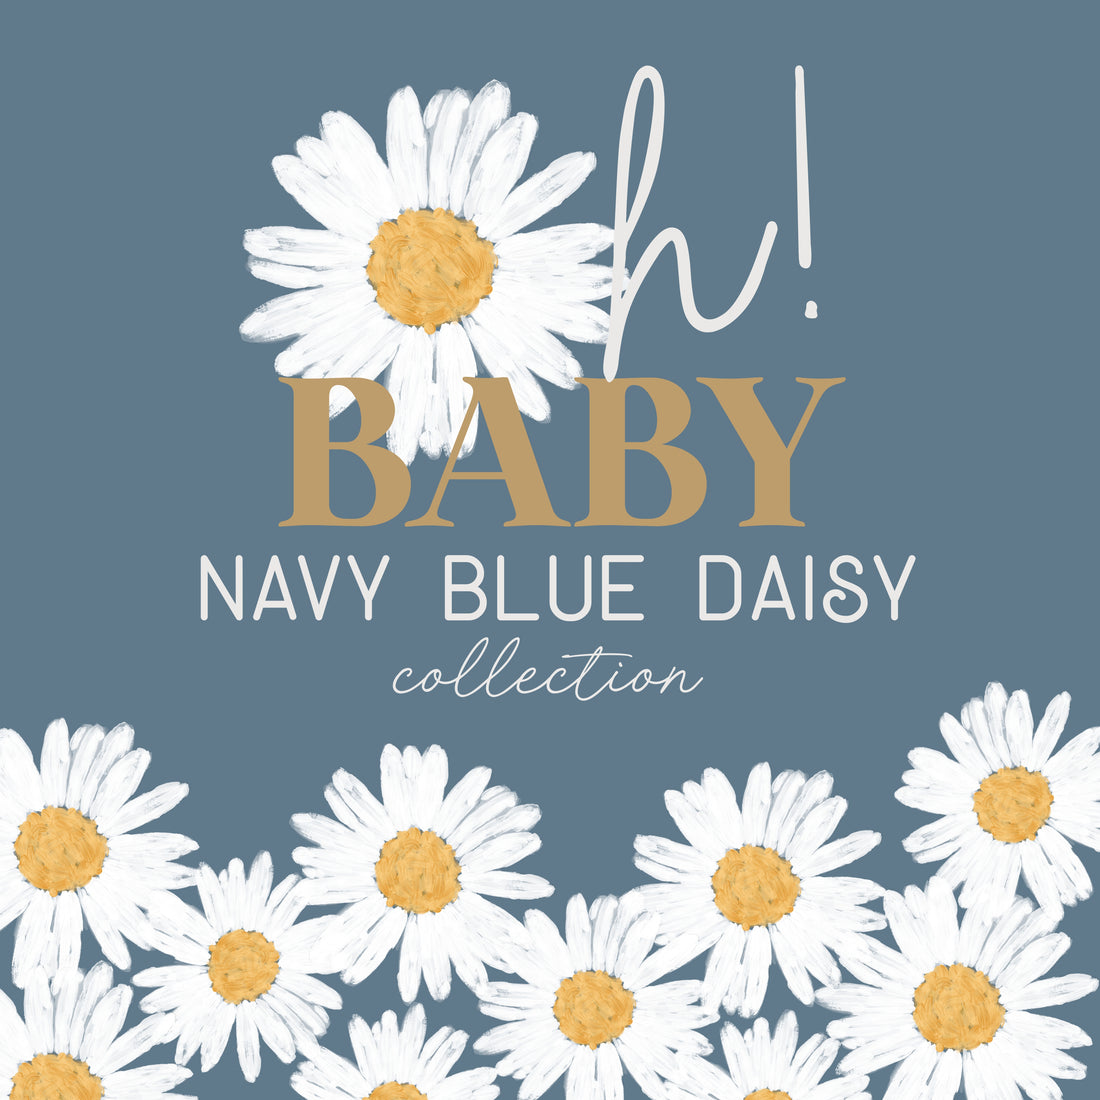  Navy Daisy